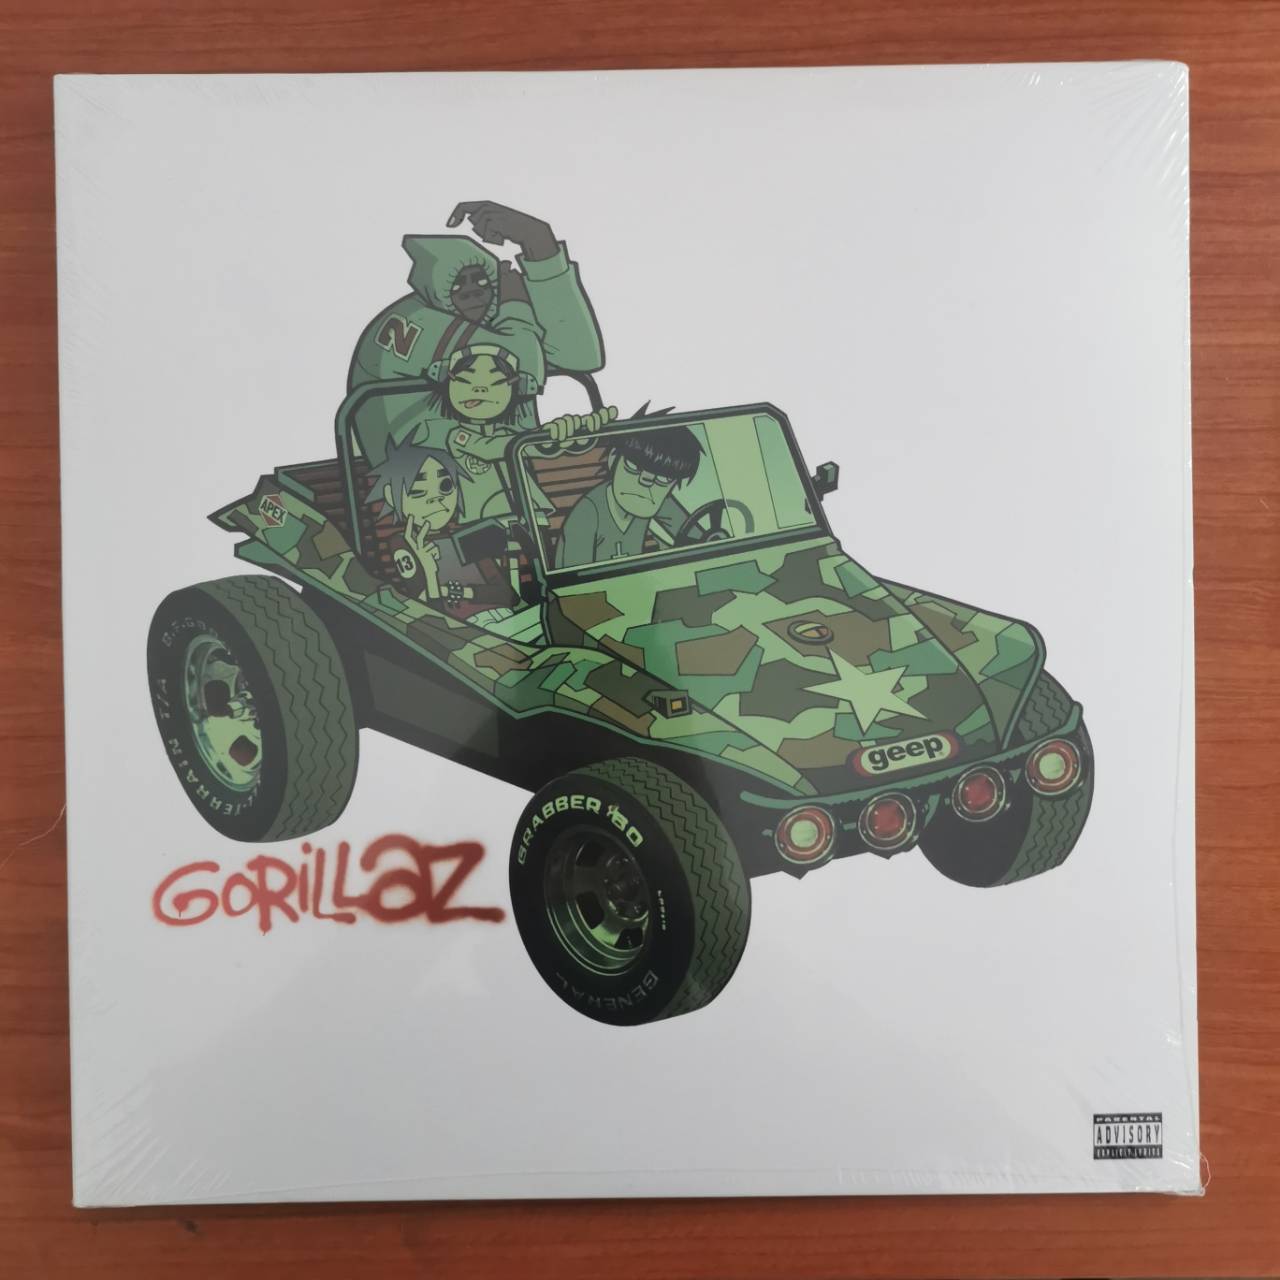 แผ่นเสียง Gorillaz ‎– Gorillaz แผ่นเสียงใหม่ ซีล